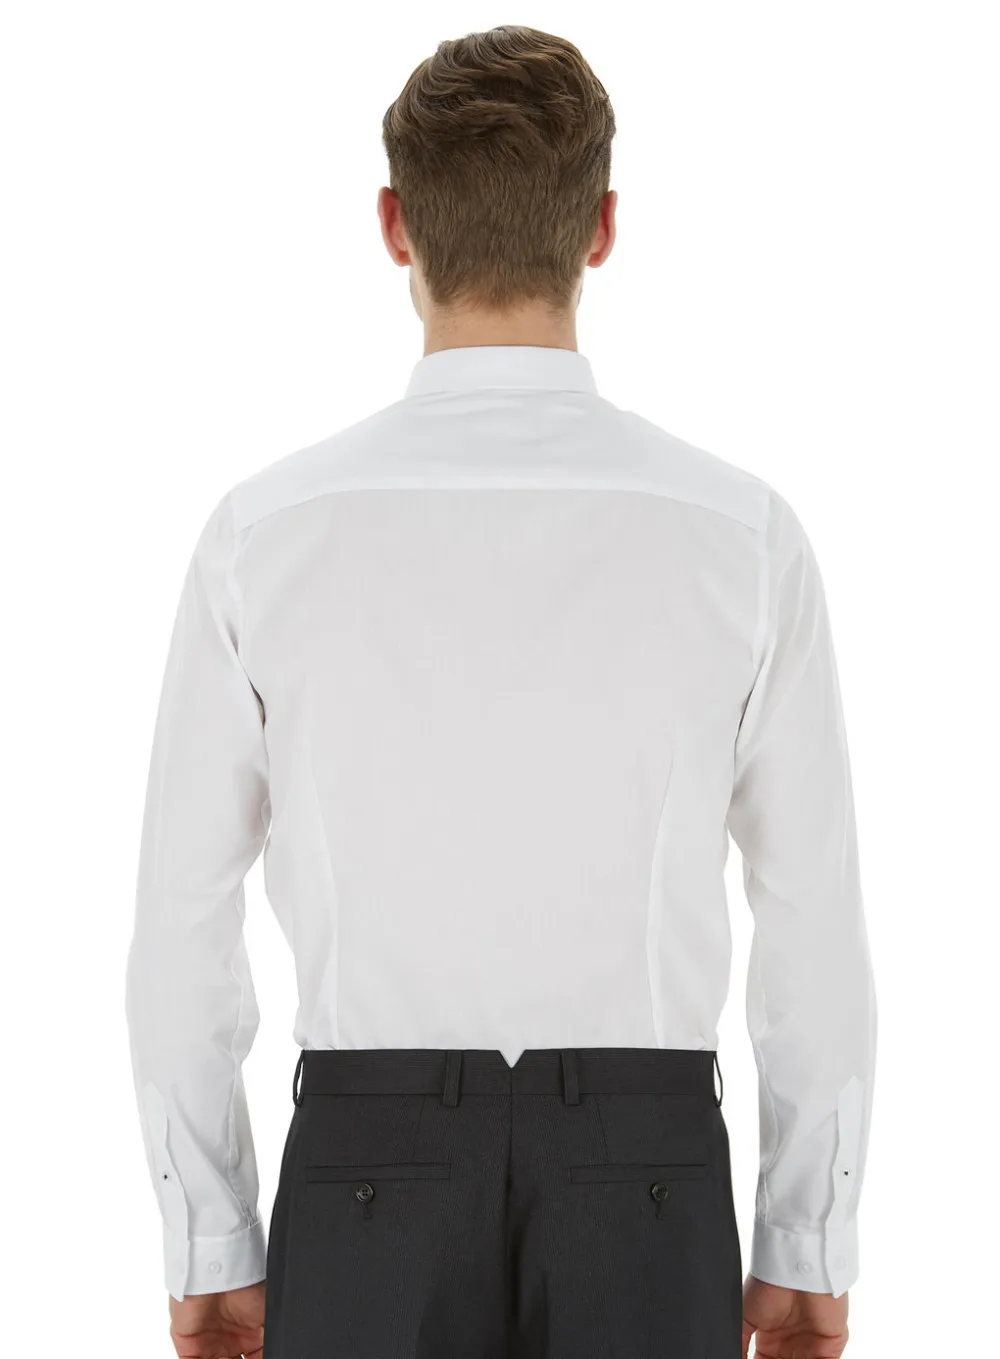 Дизайн хлопок чистый белый классический воротник рубашки для мужчин